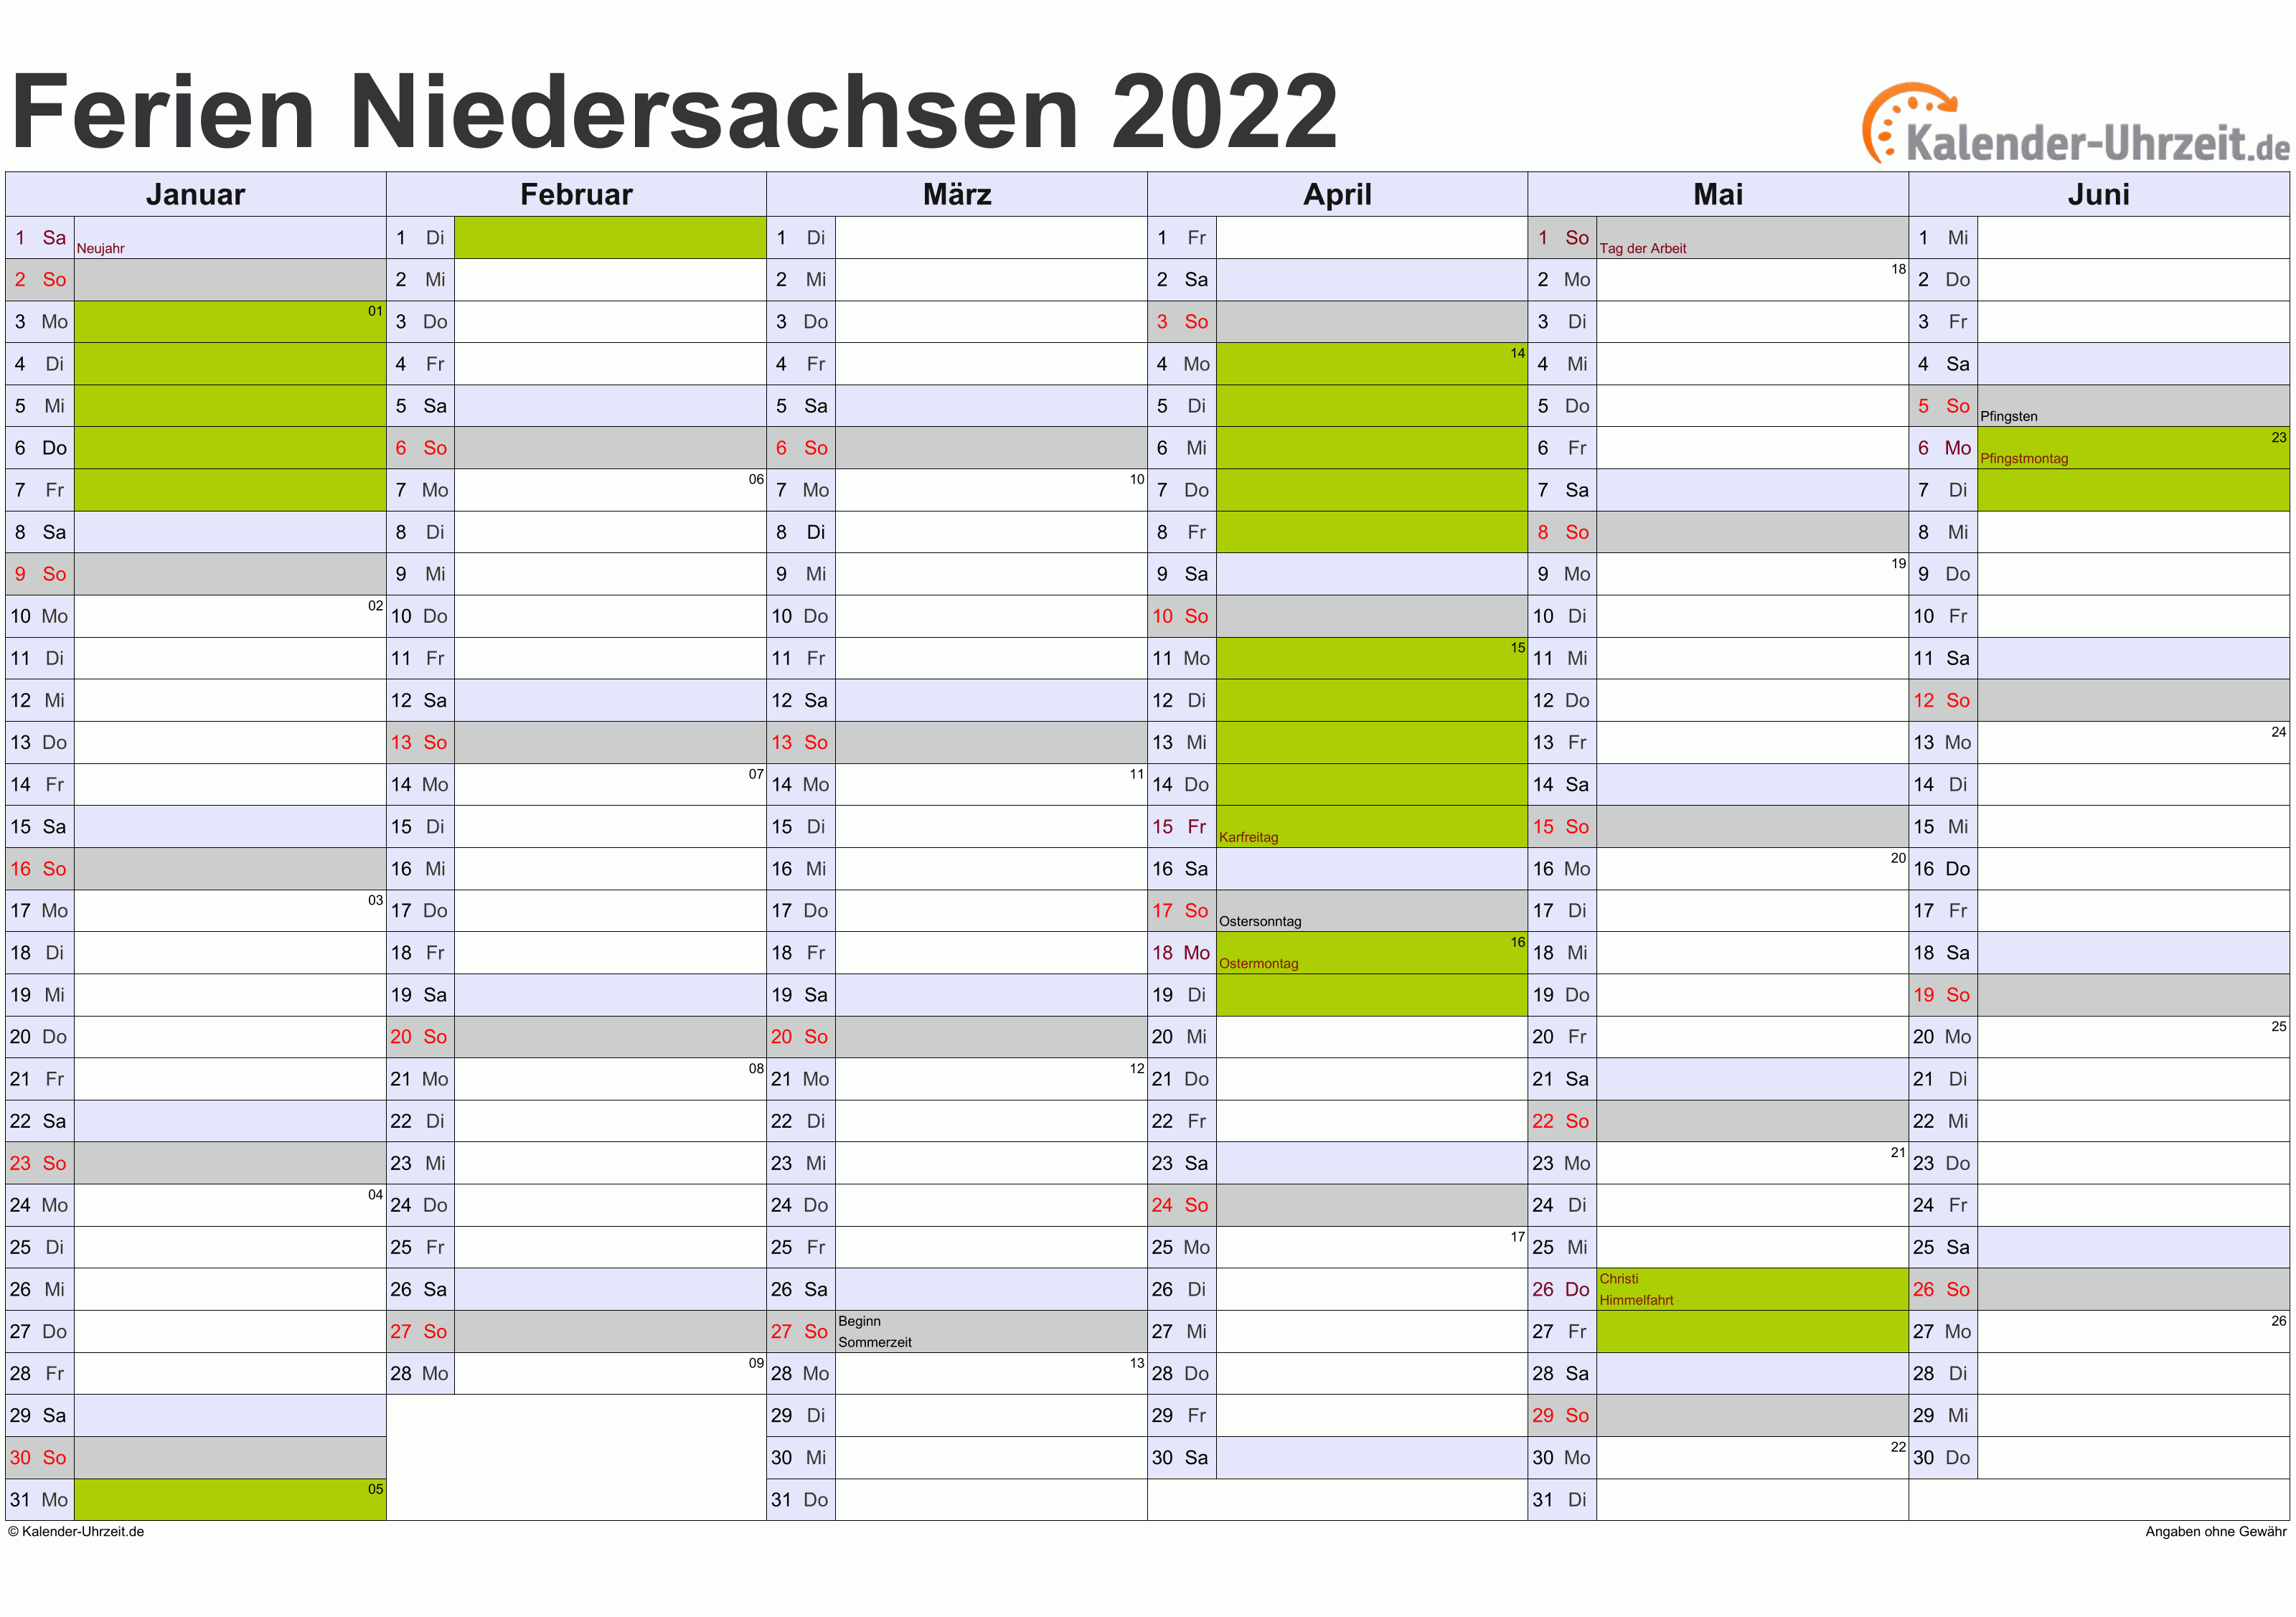 Ferien Niedersachsen 2022 - Ferienkalender zum Ausdrucken